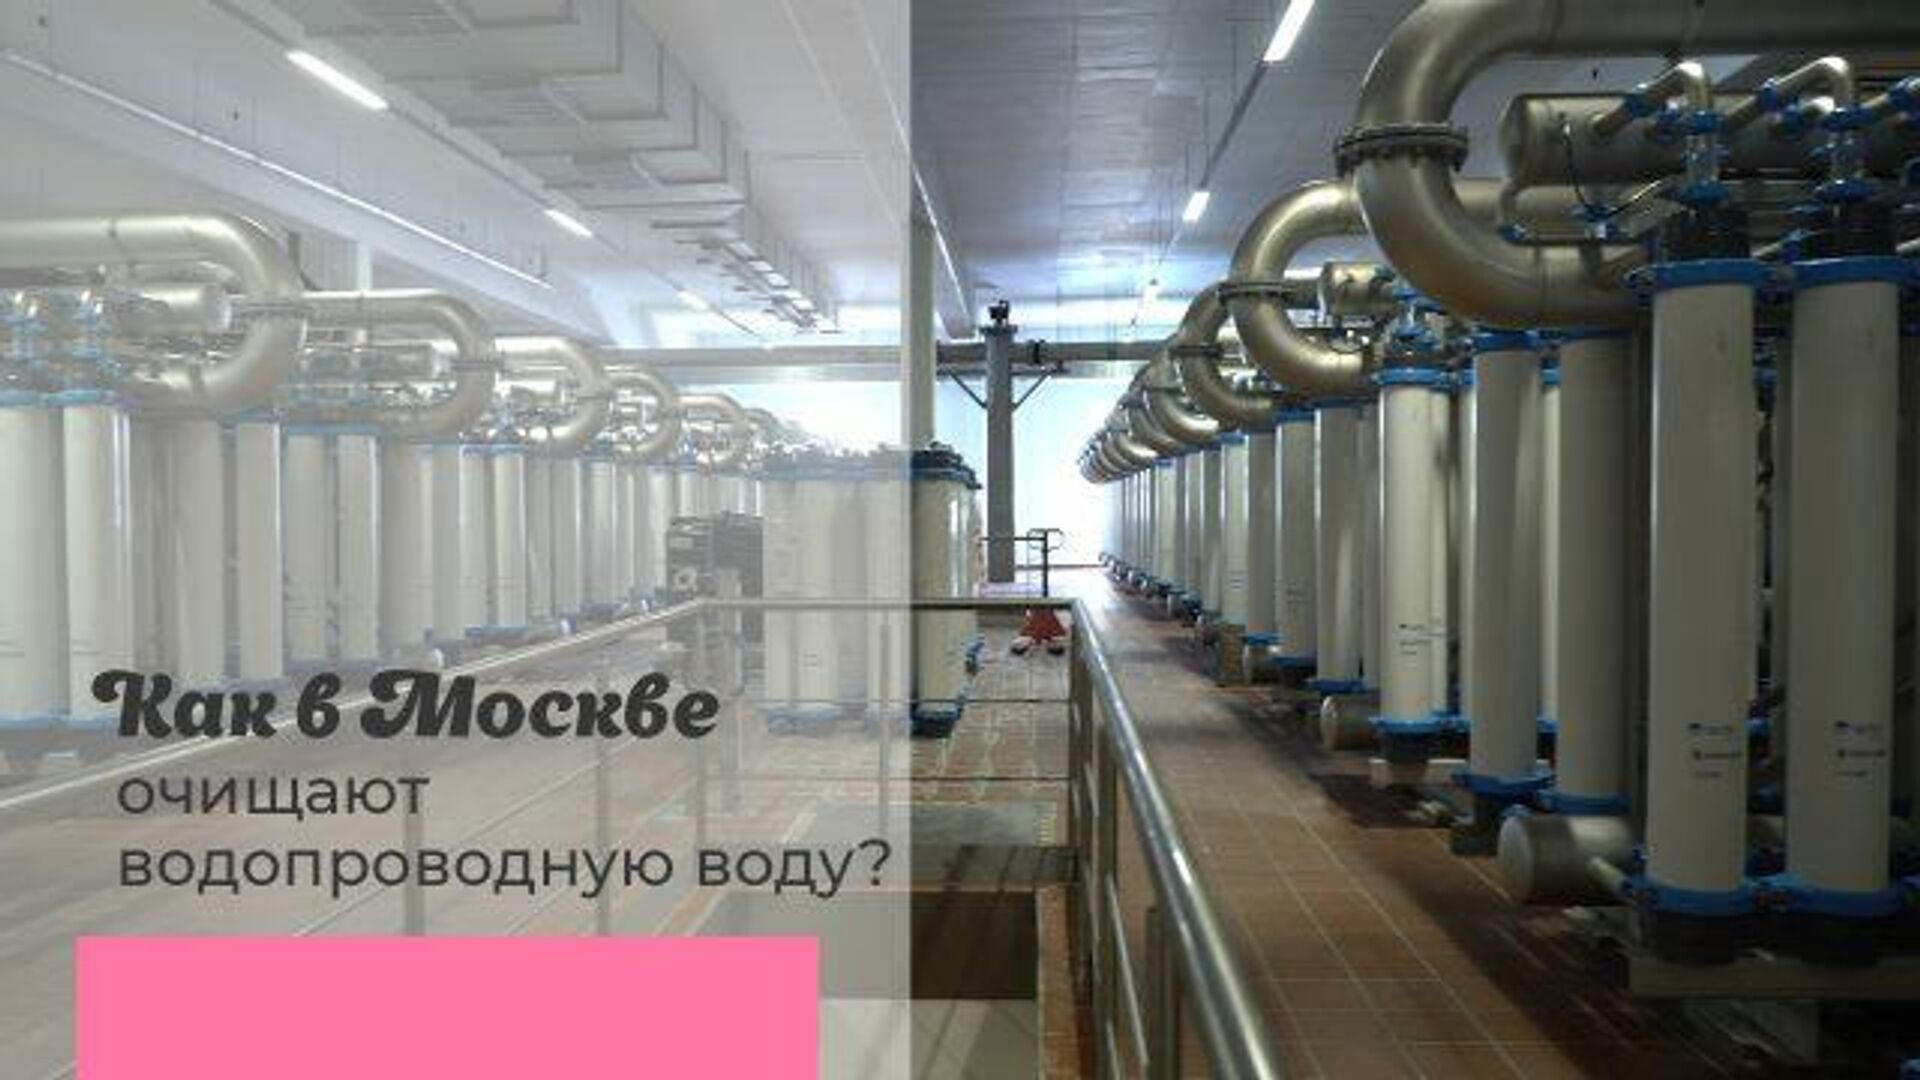 Первый городской водопровод в москве